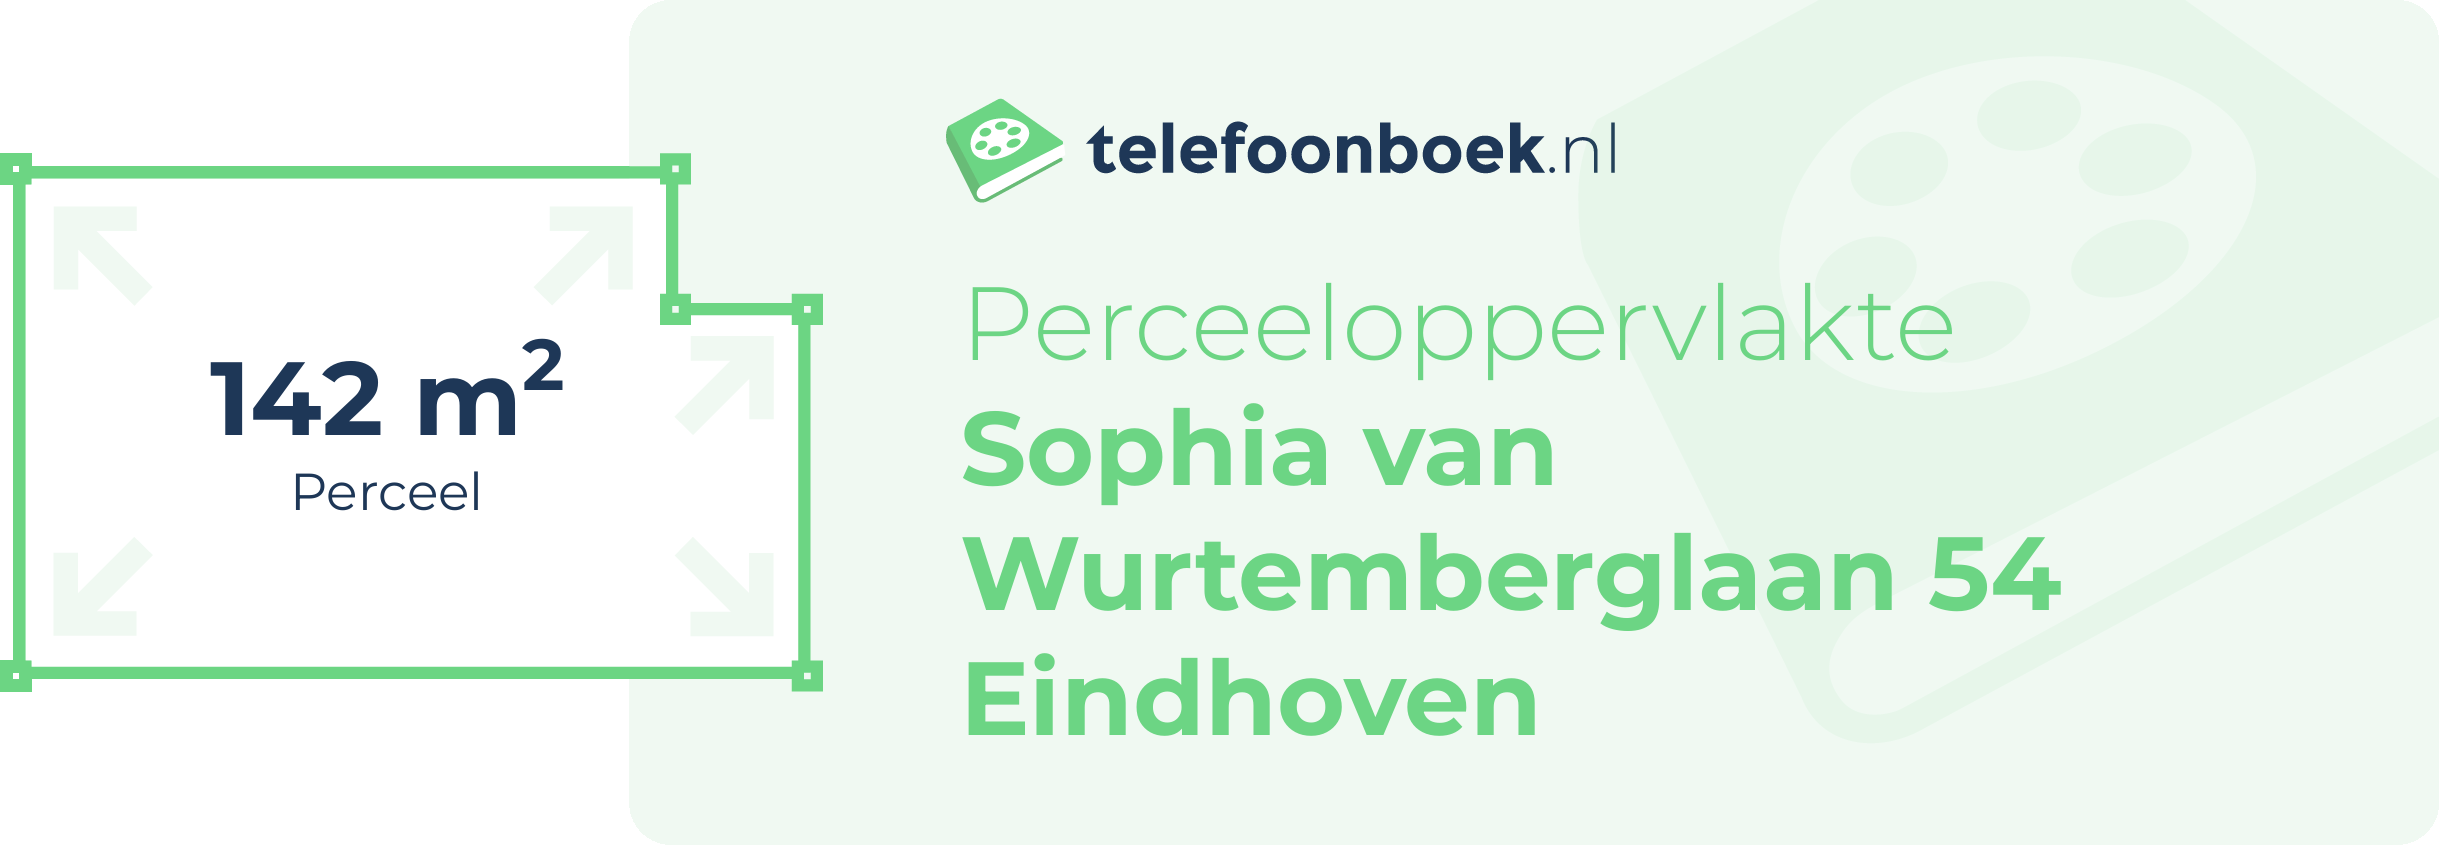 Perceeloppervlakte Sophia Van Wurtemberglaan 54 Eindhoven